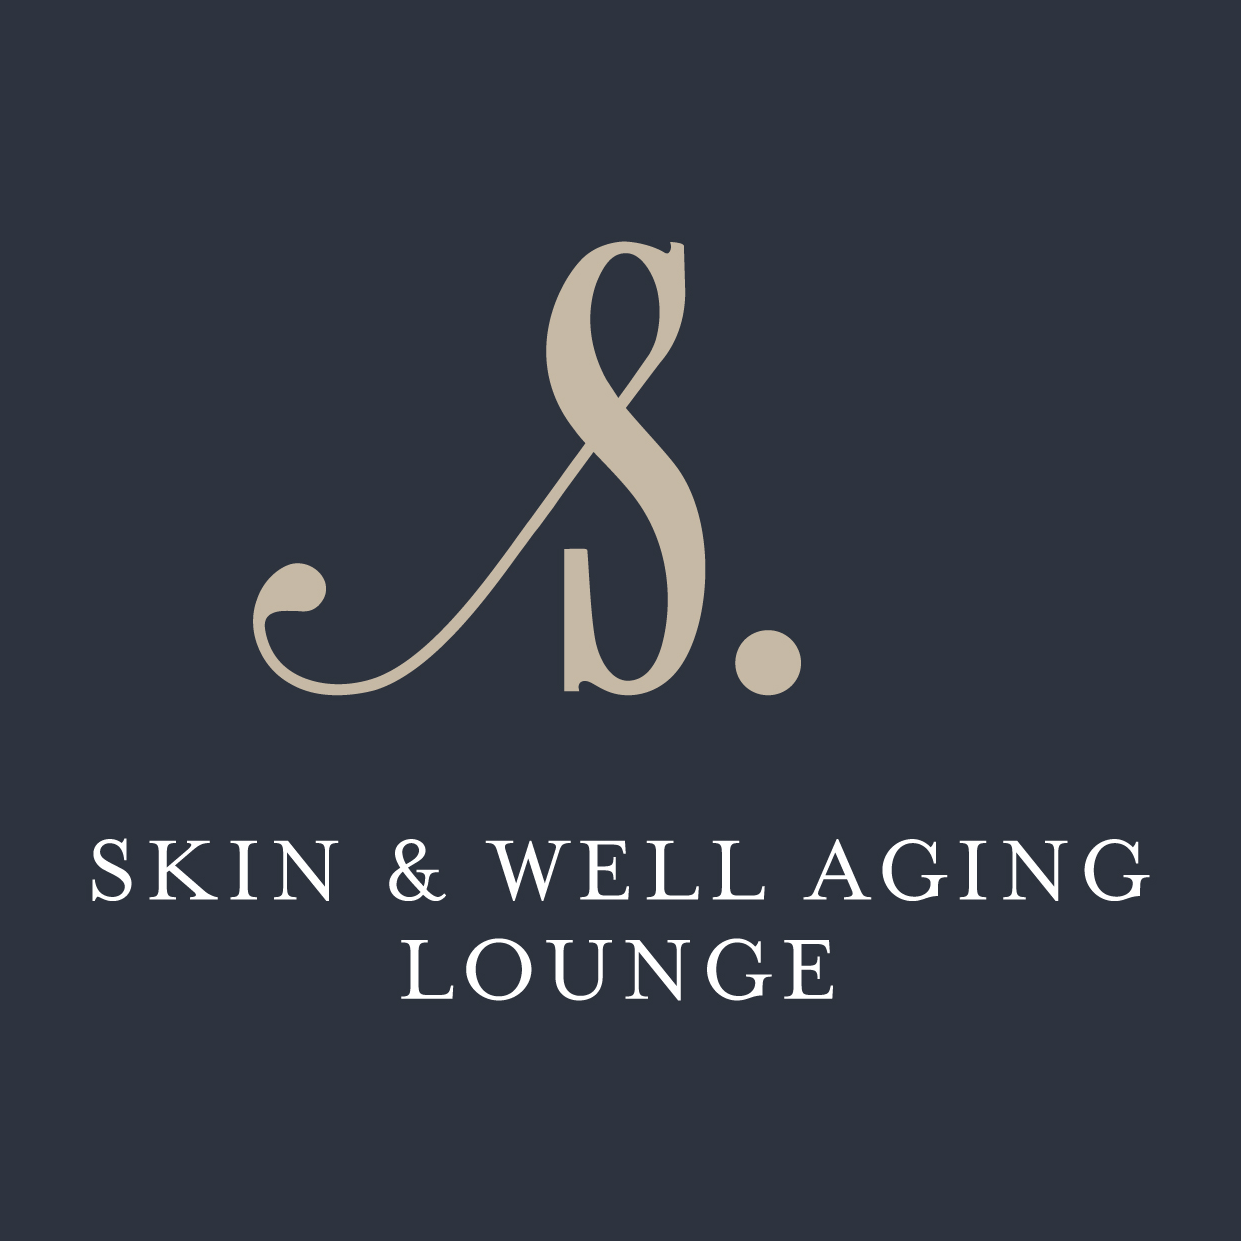 Skin & Well Aging Lounge in Engelskirchen - Logo